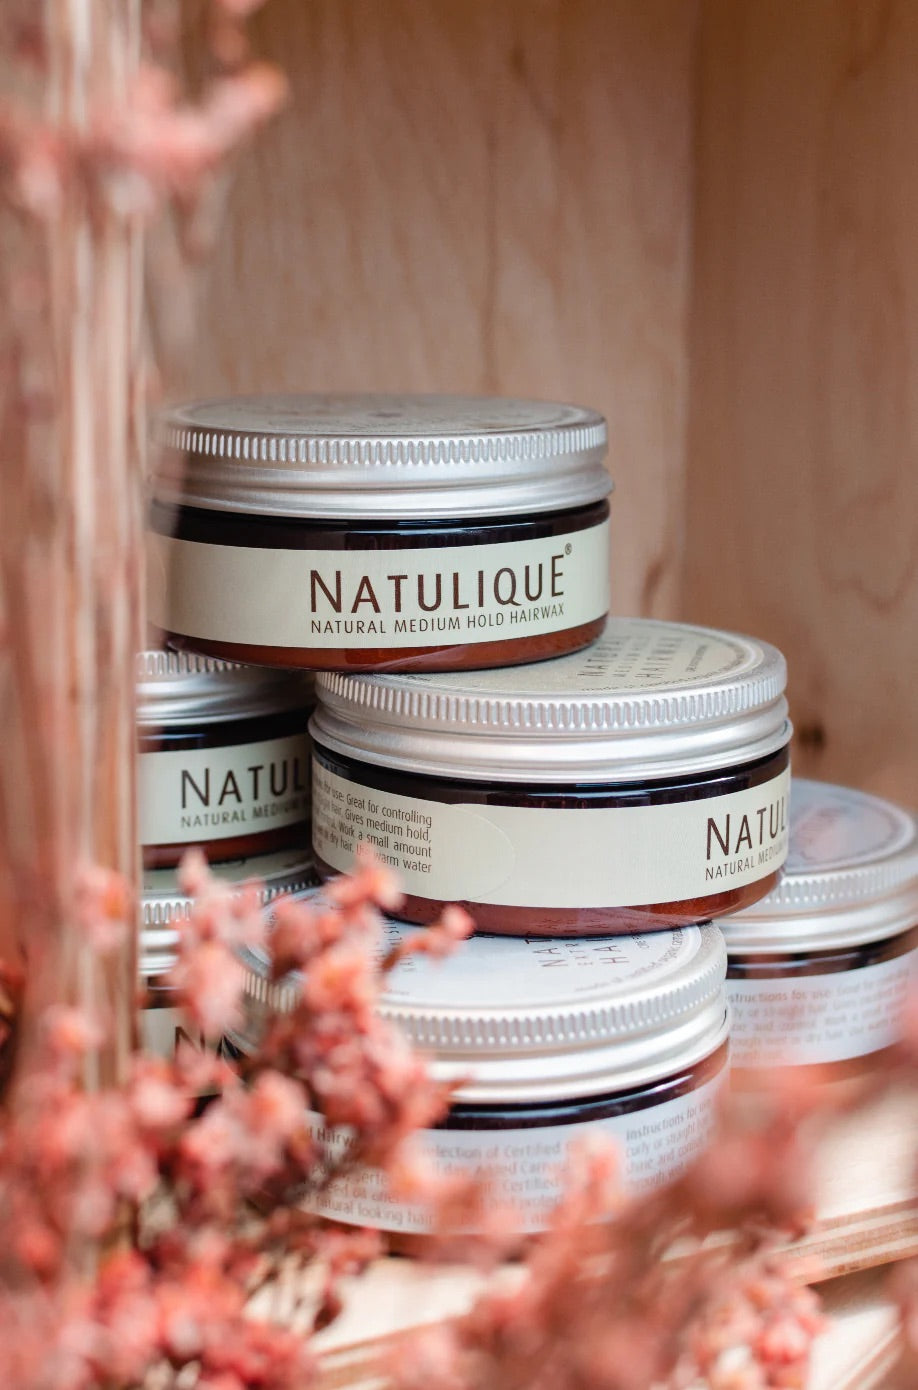 Natulique's Natuurlijke Haarverzorging